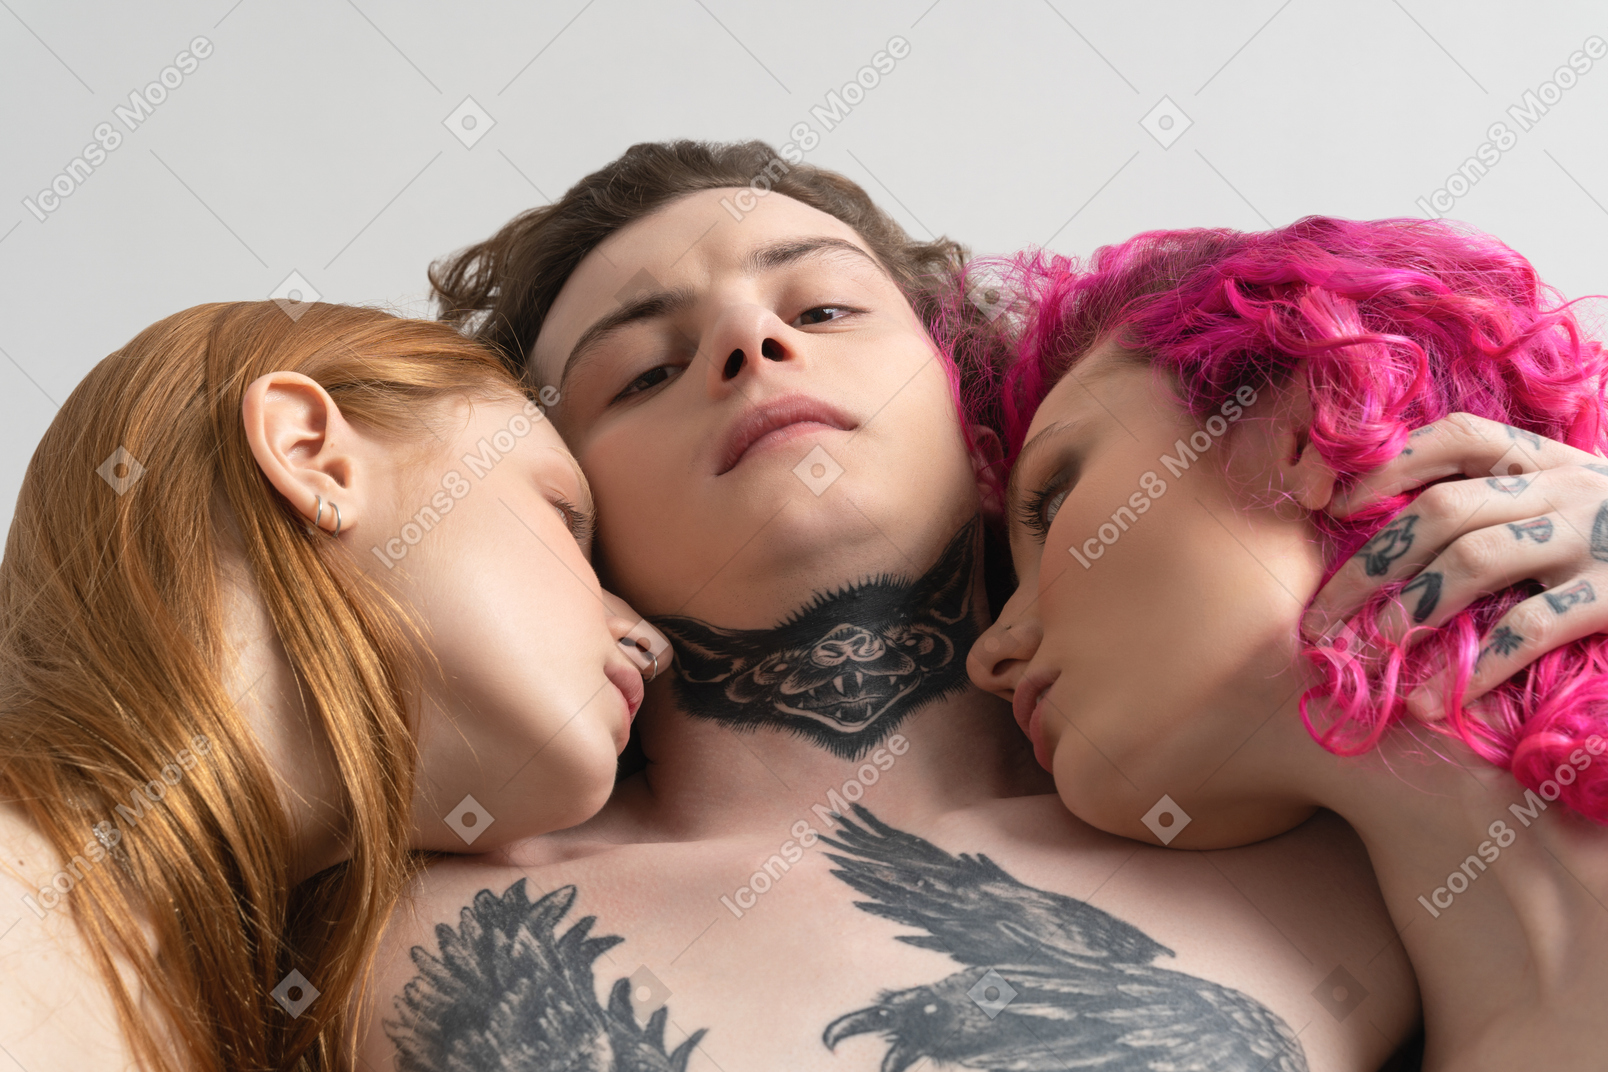 Порно спящие - Жанр порно спящие, это секс мужчин с девушками, которые спят, а их трахают.